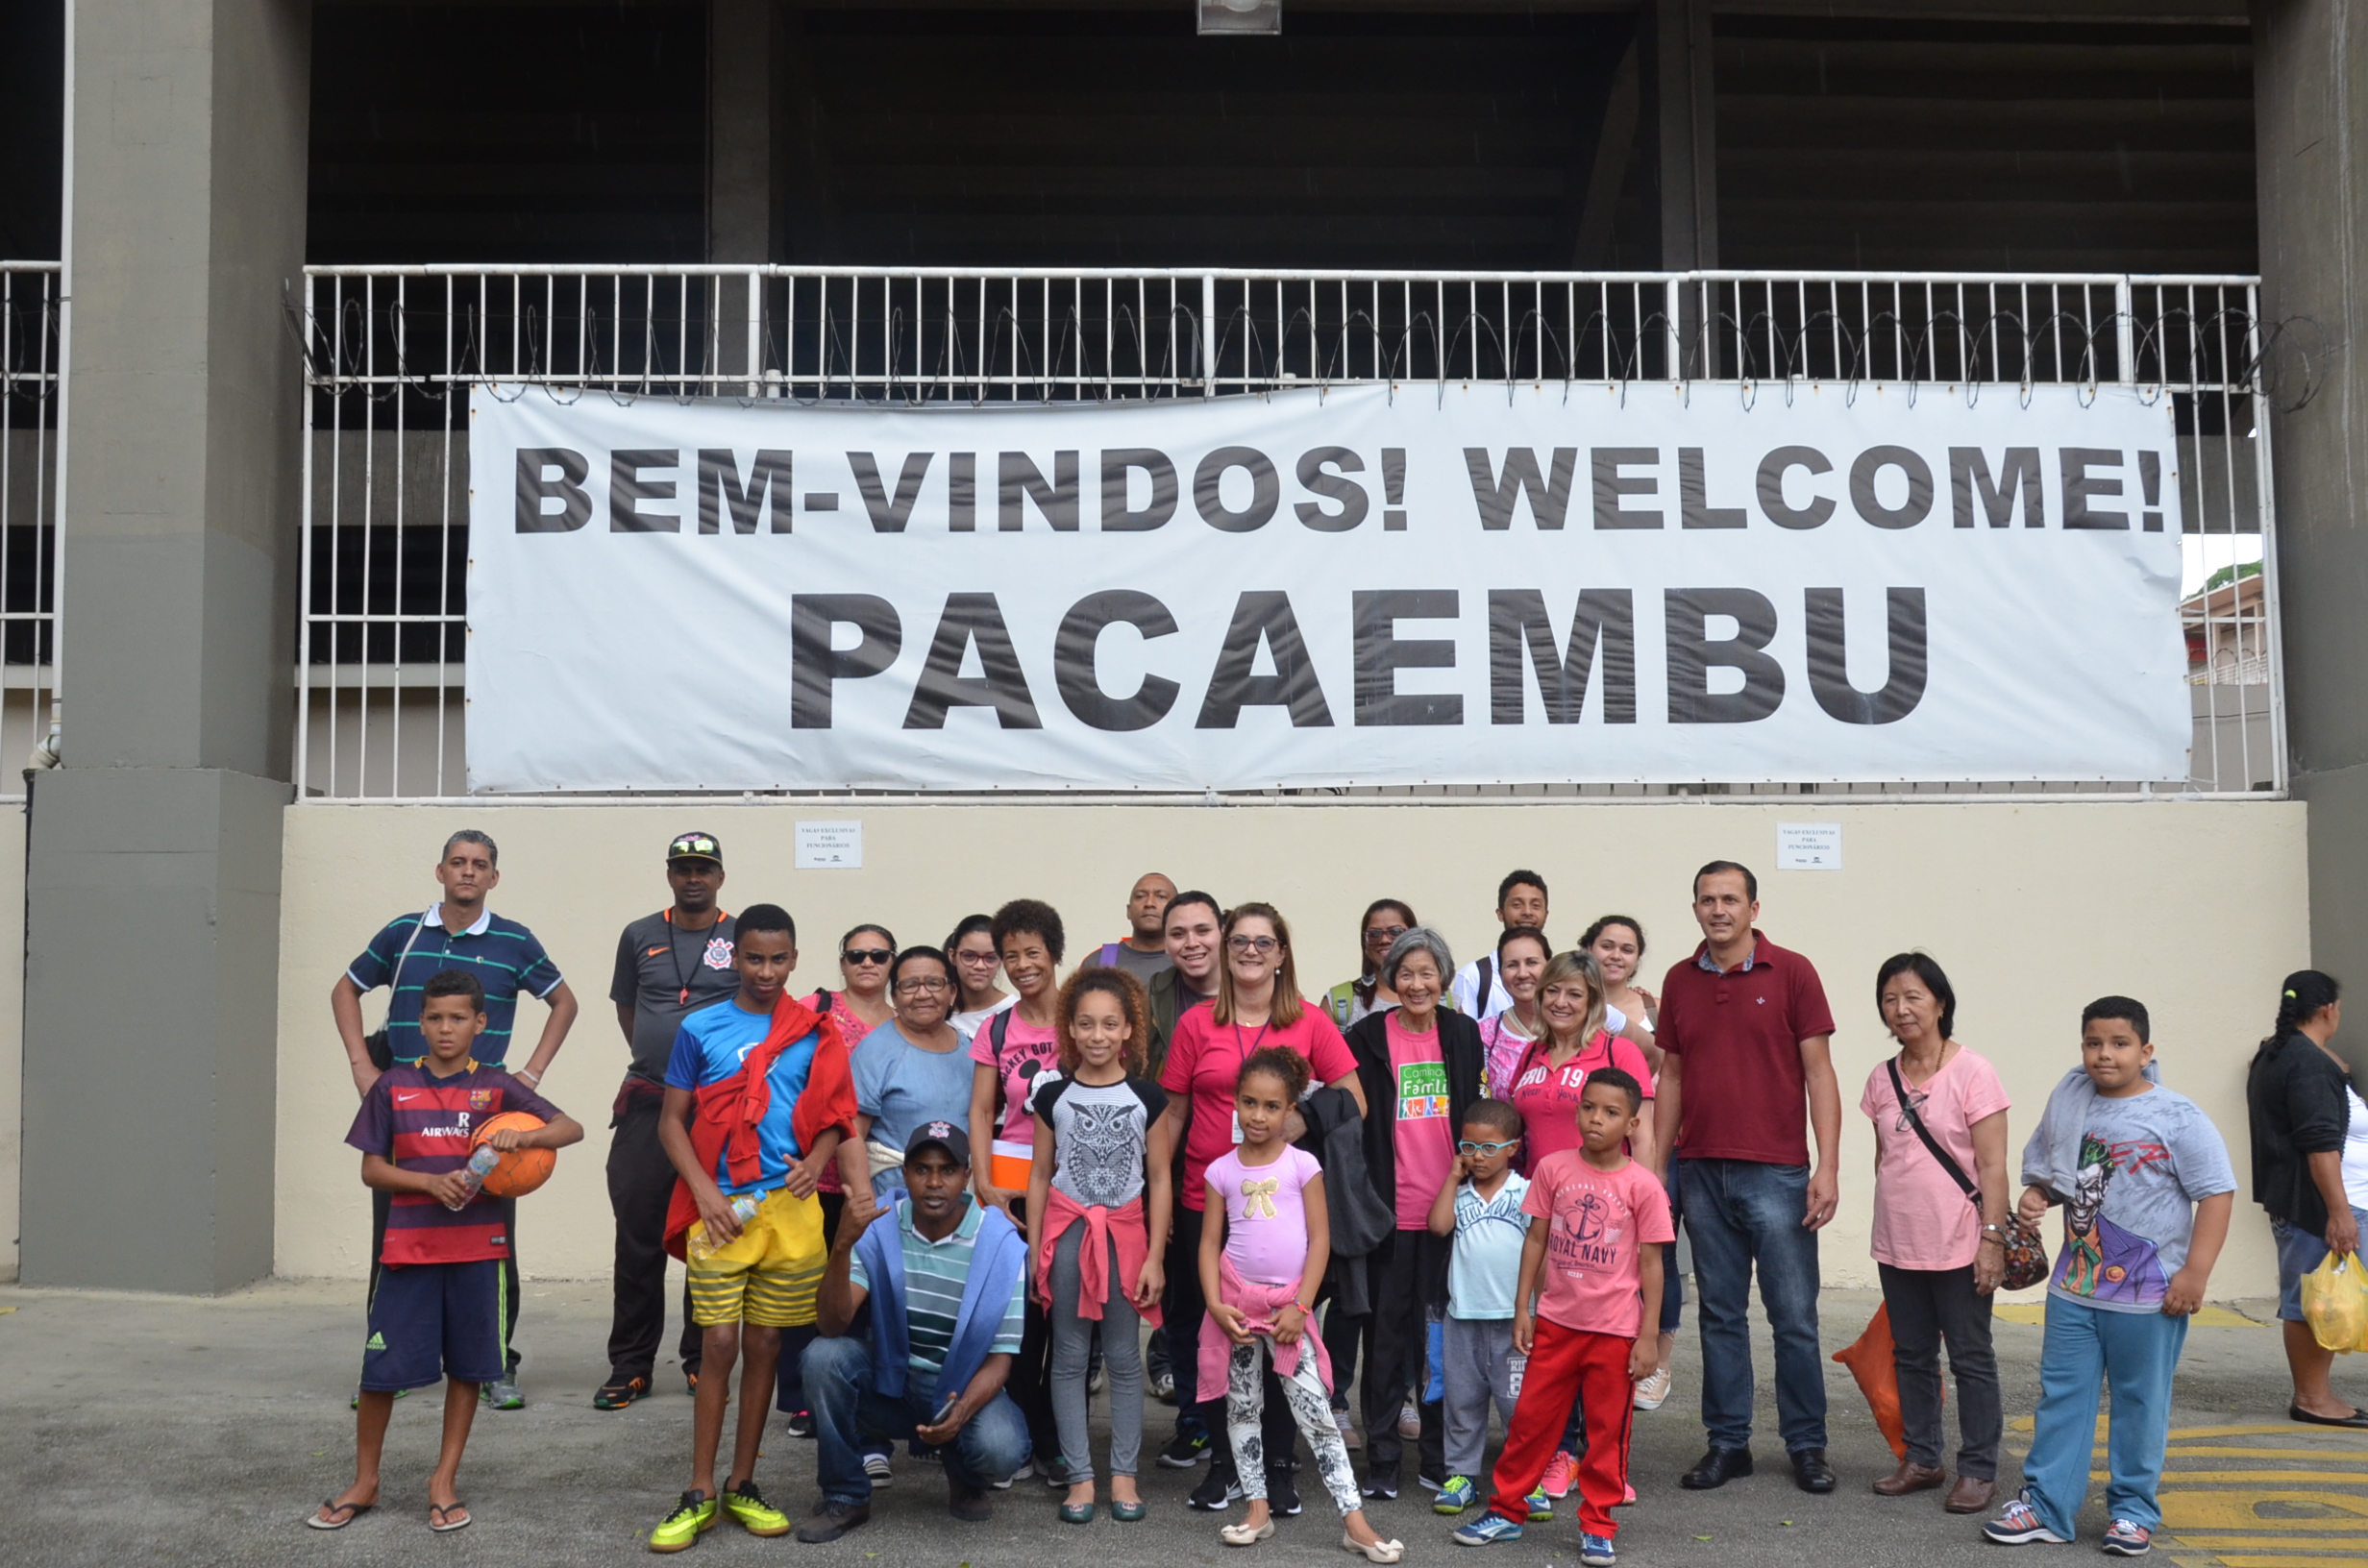 Grupo de pessoas e ao fundo uma placa escrita Bem-vindo! Welcome! Pacaembu